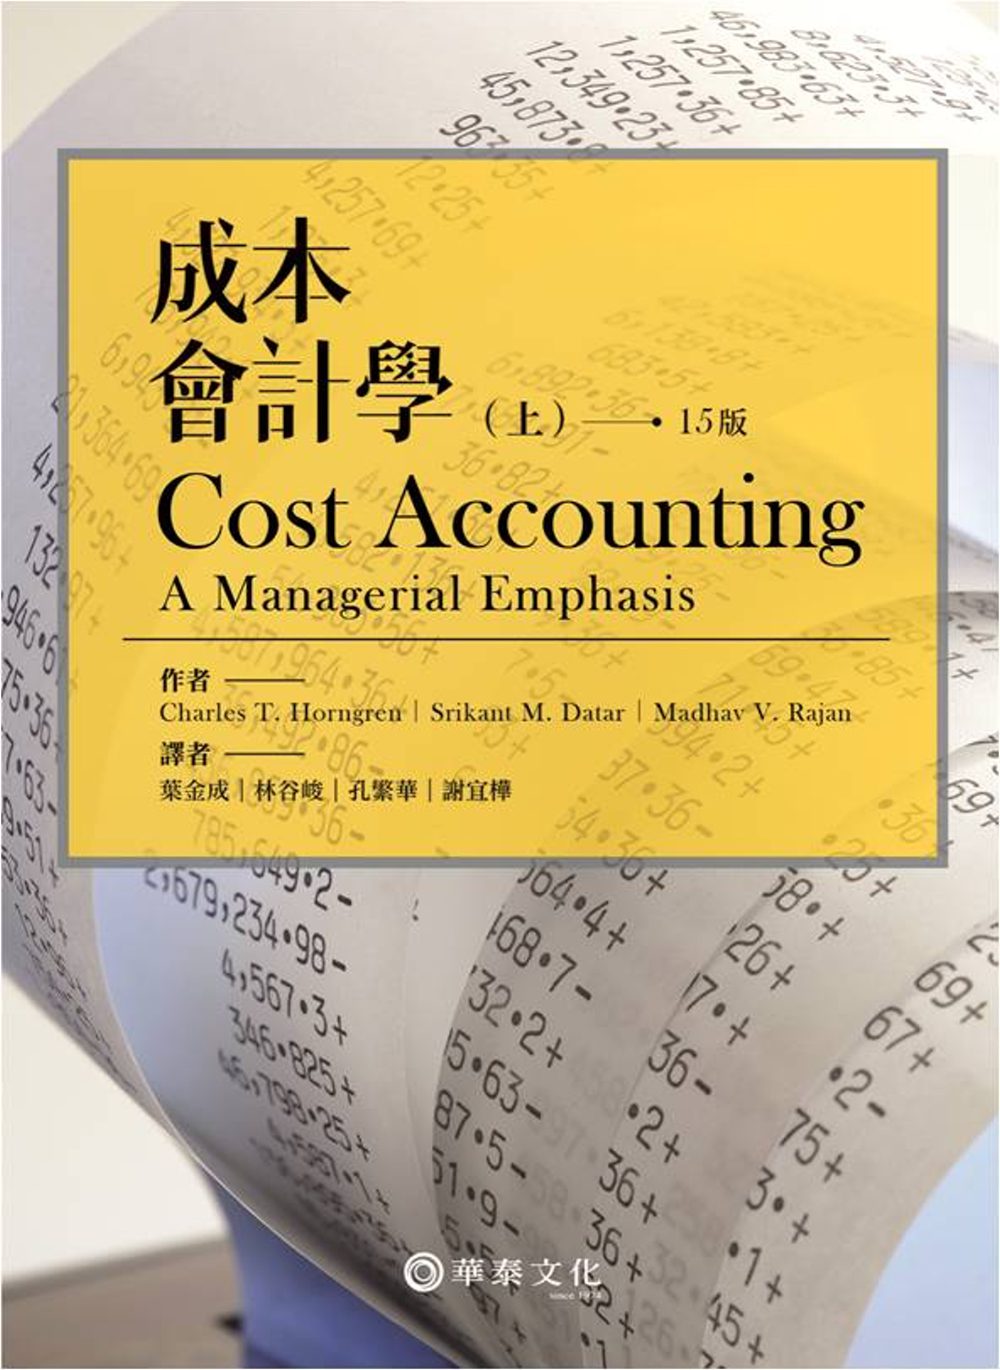 成本會計學(上)15版